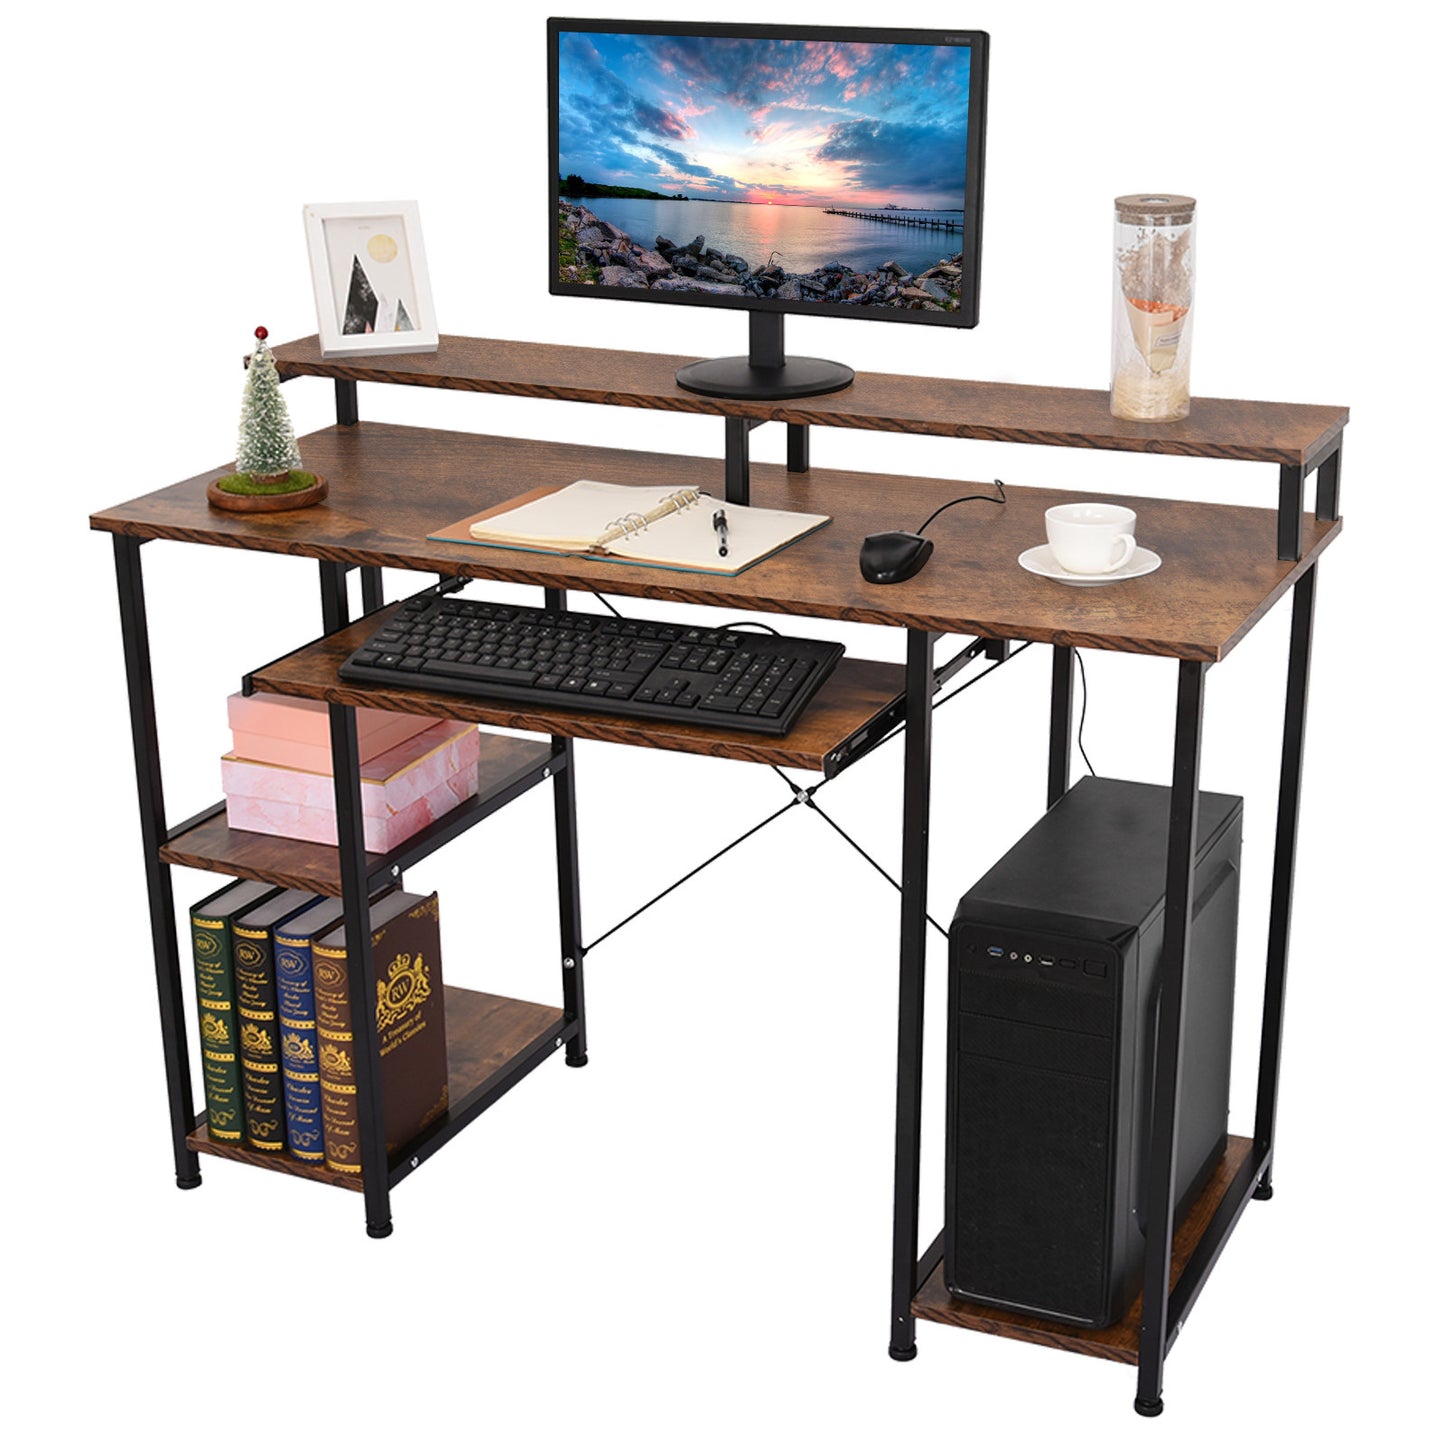 Modern Computer Desk With Storage Shelves Home Learning Desk Workstation